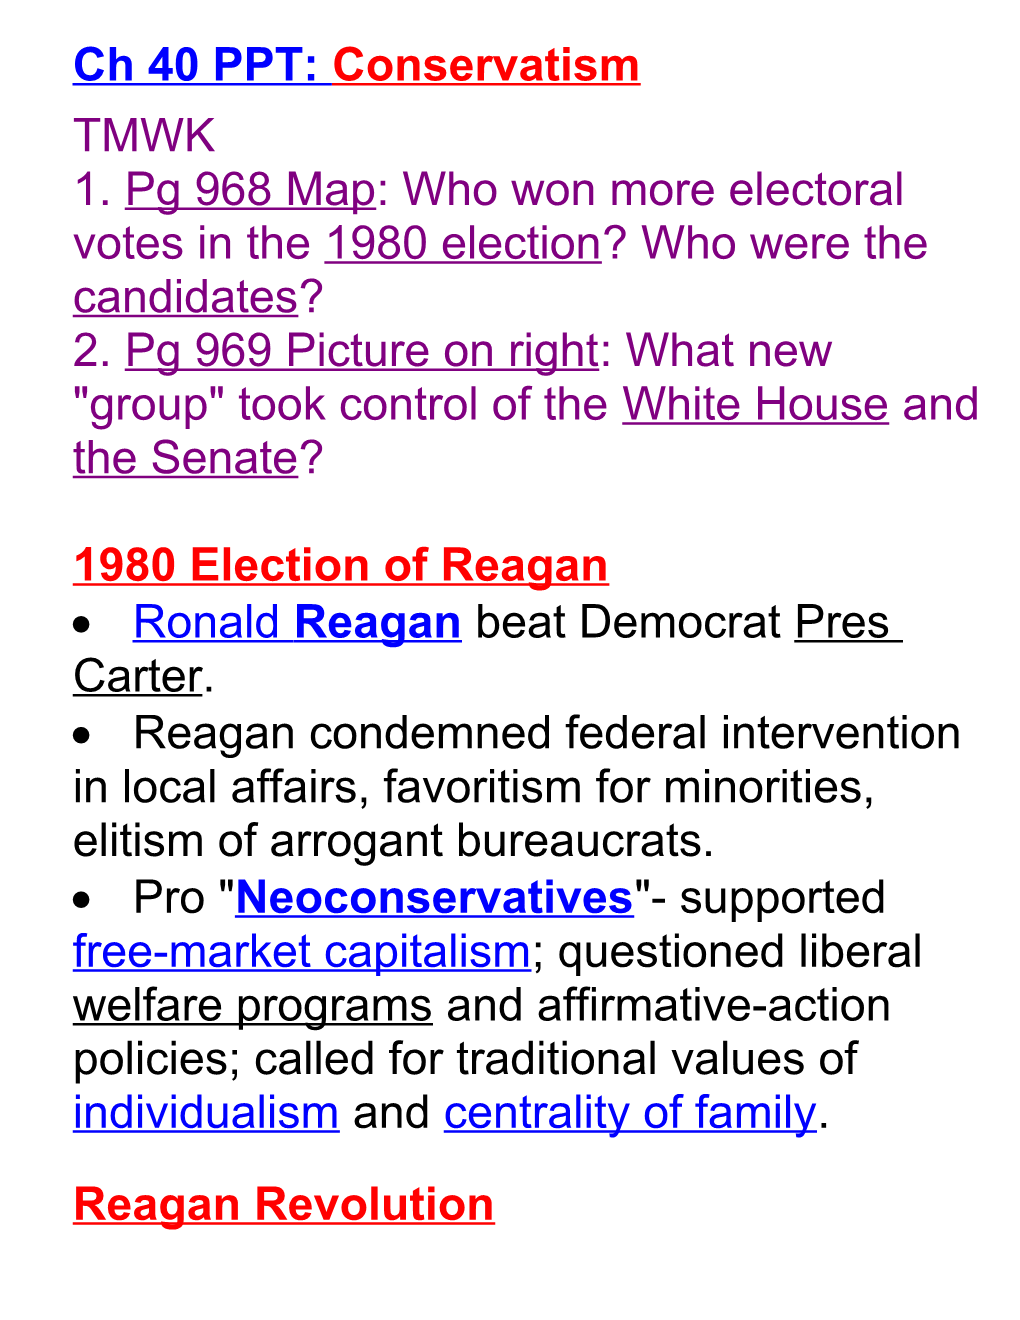 1980 Election of Reagan